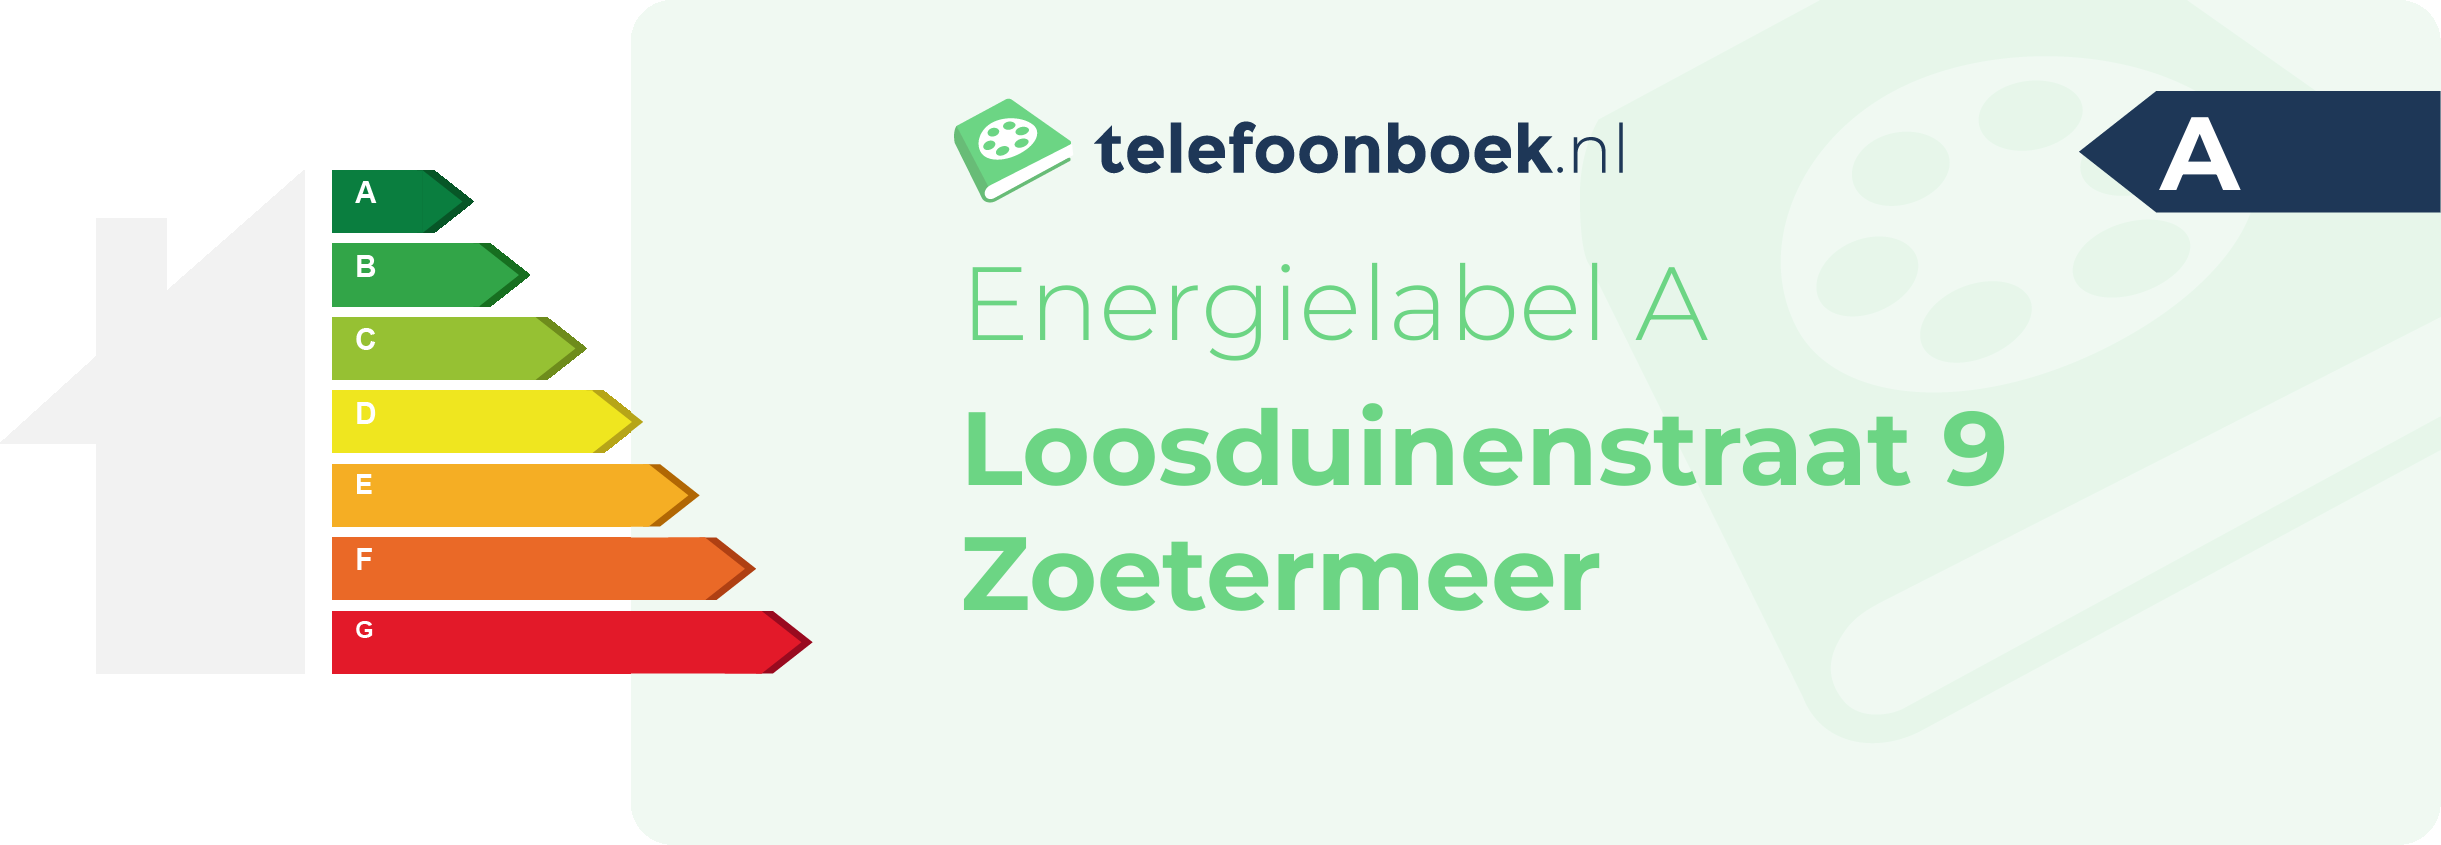 Energielabel Loosduinenstraat 9 Zoetermeer